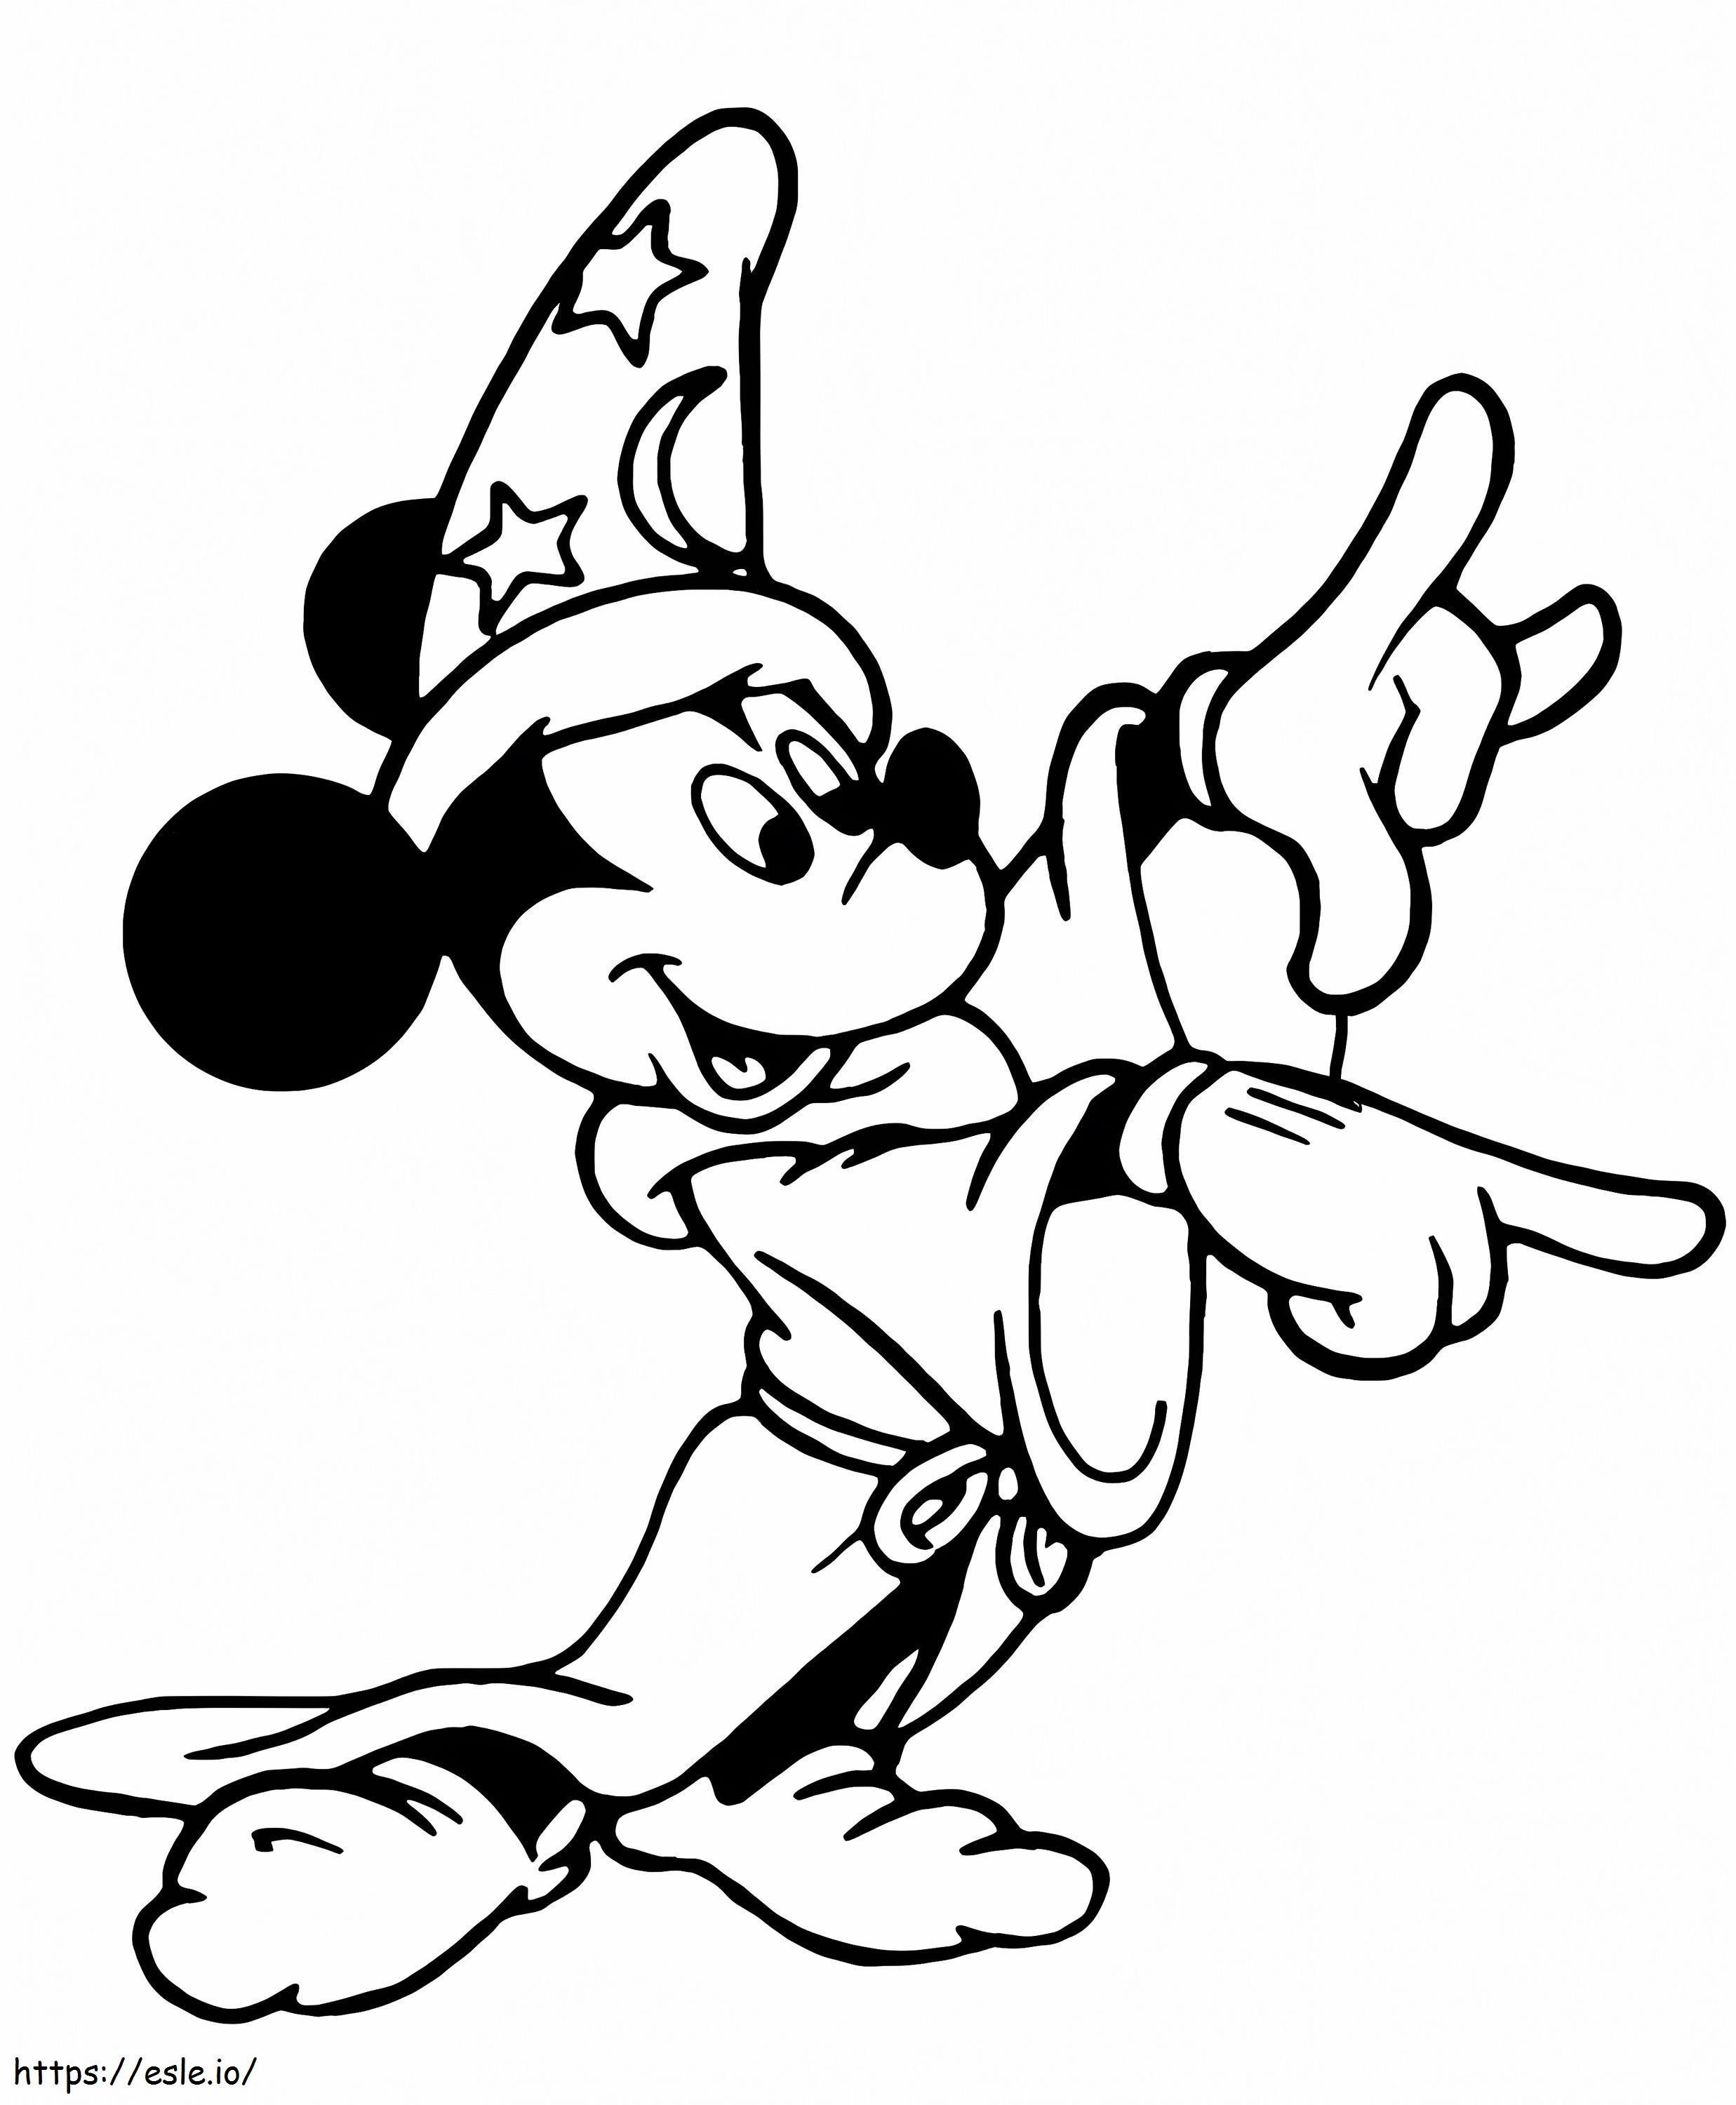 Fantasia do mágico do Mickey Mouse para colorir